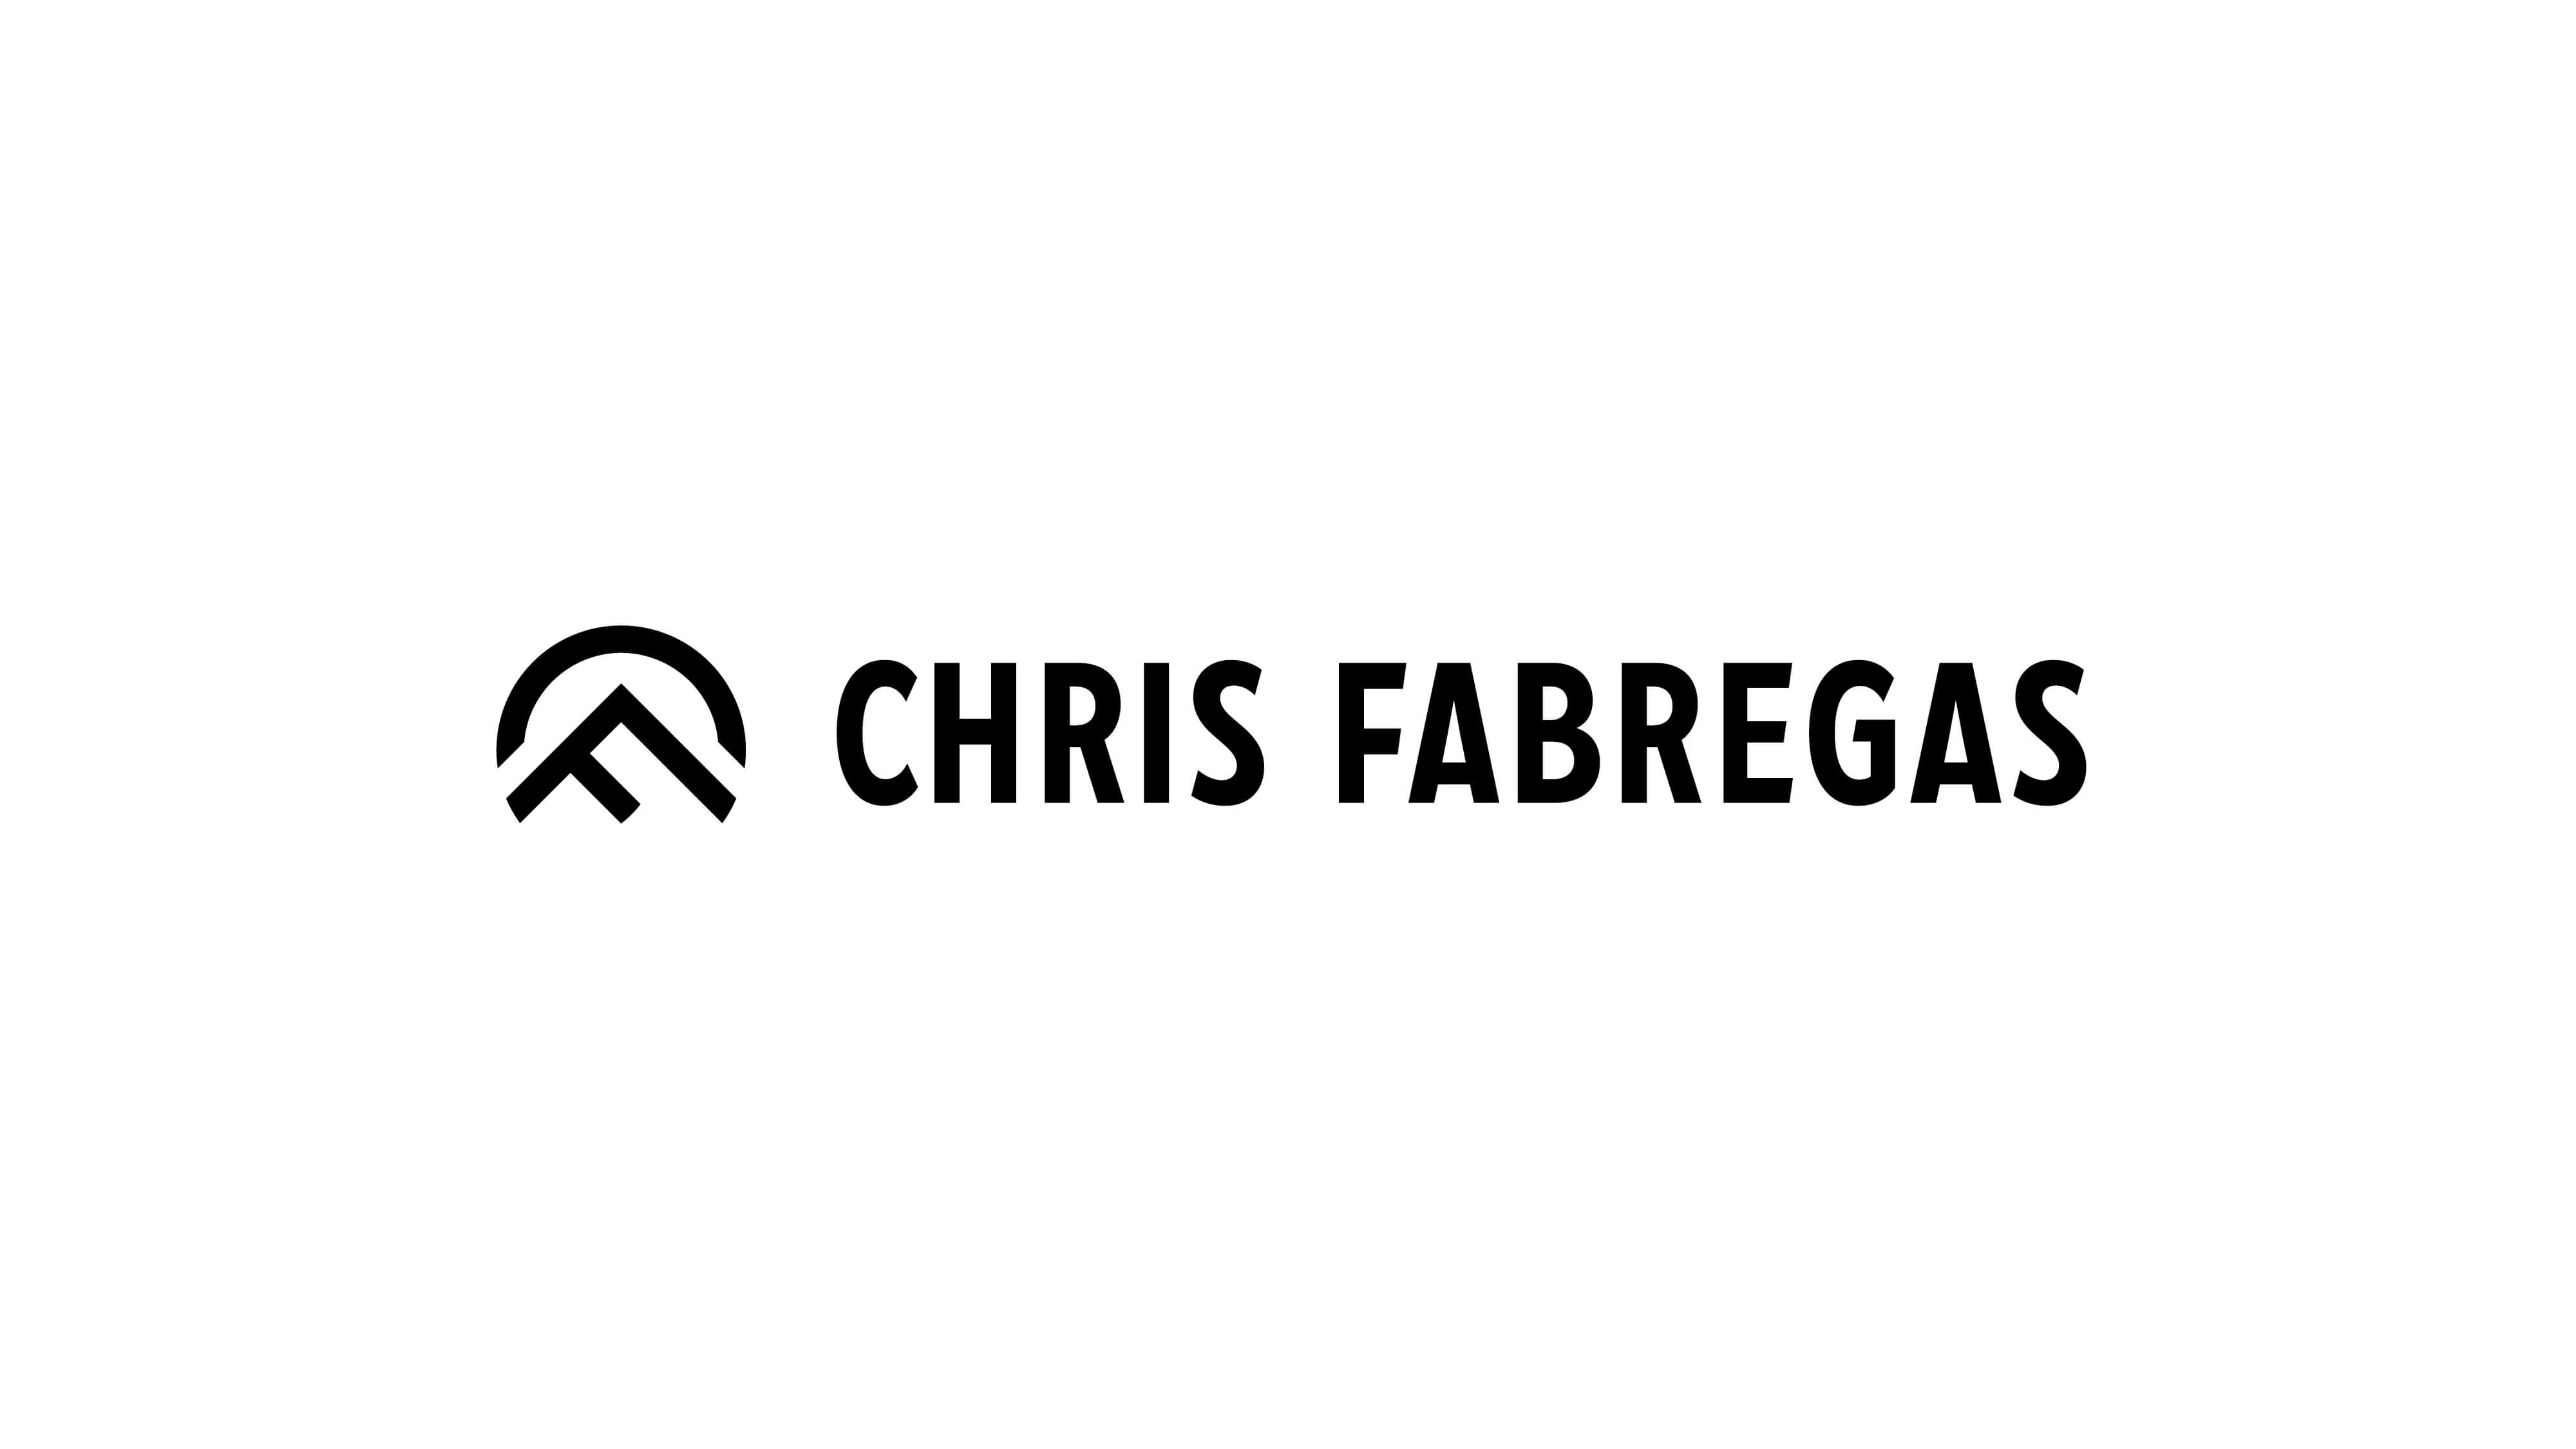 Chris Fabregas combination mark